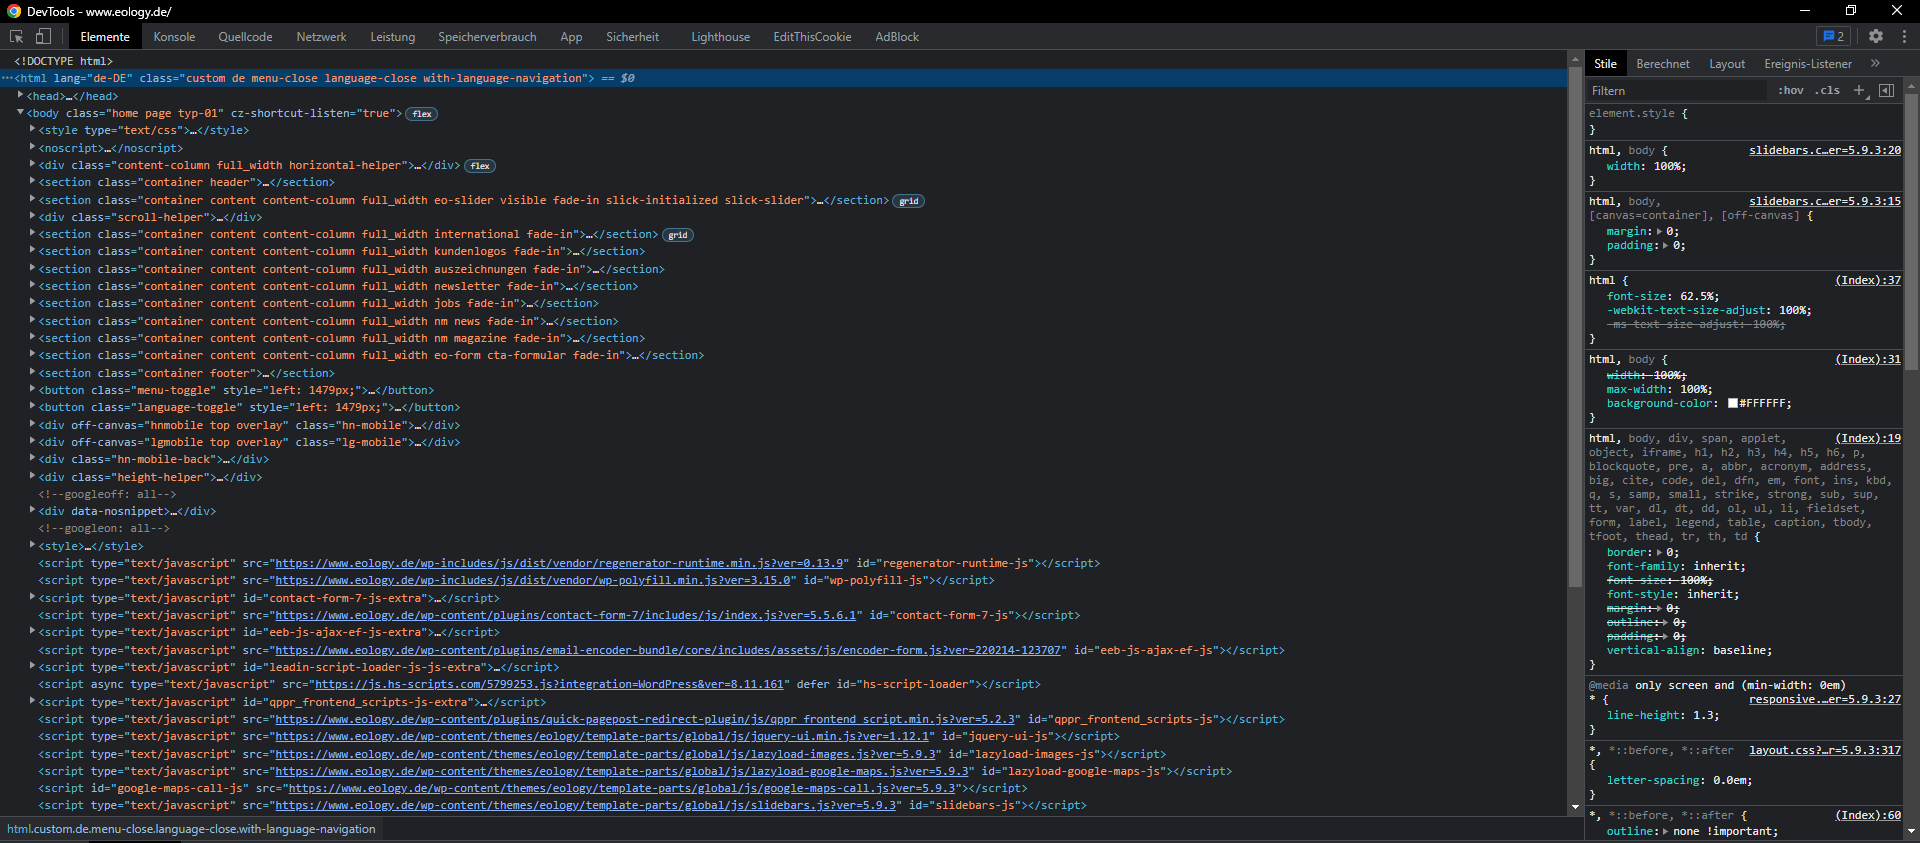 Das Bild zeigt einen Screenshot der Developer Tools der Seite eology.de